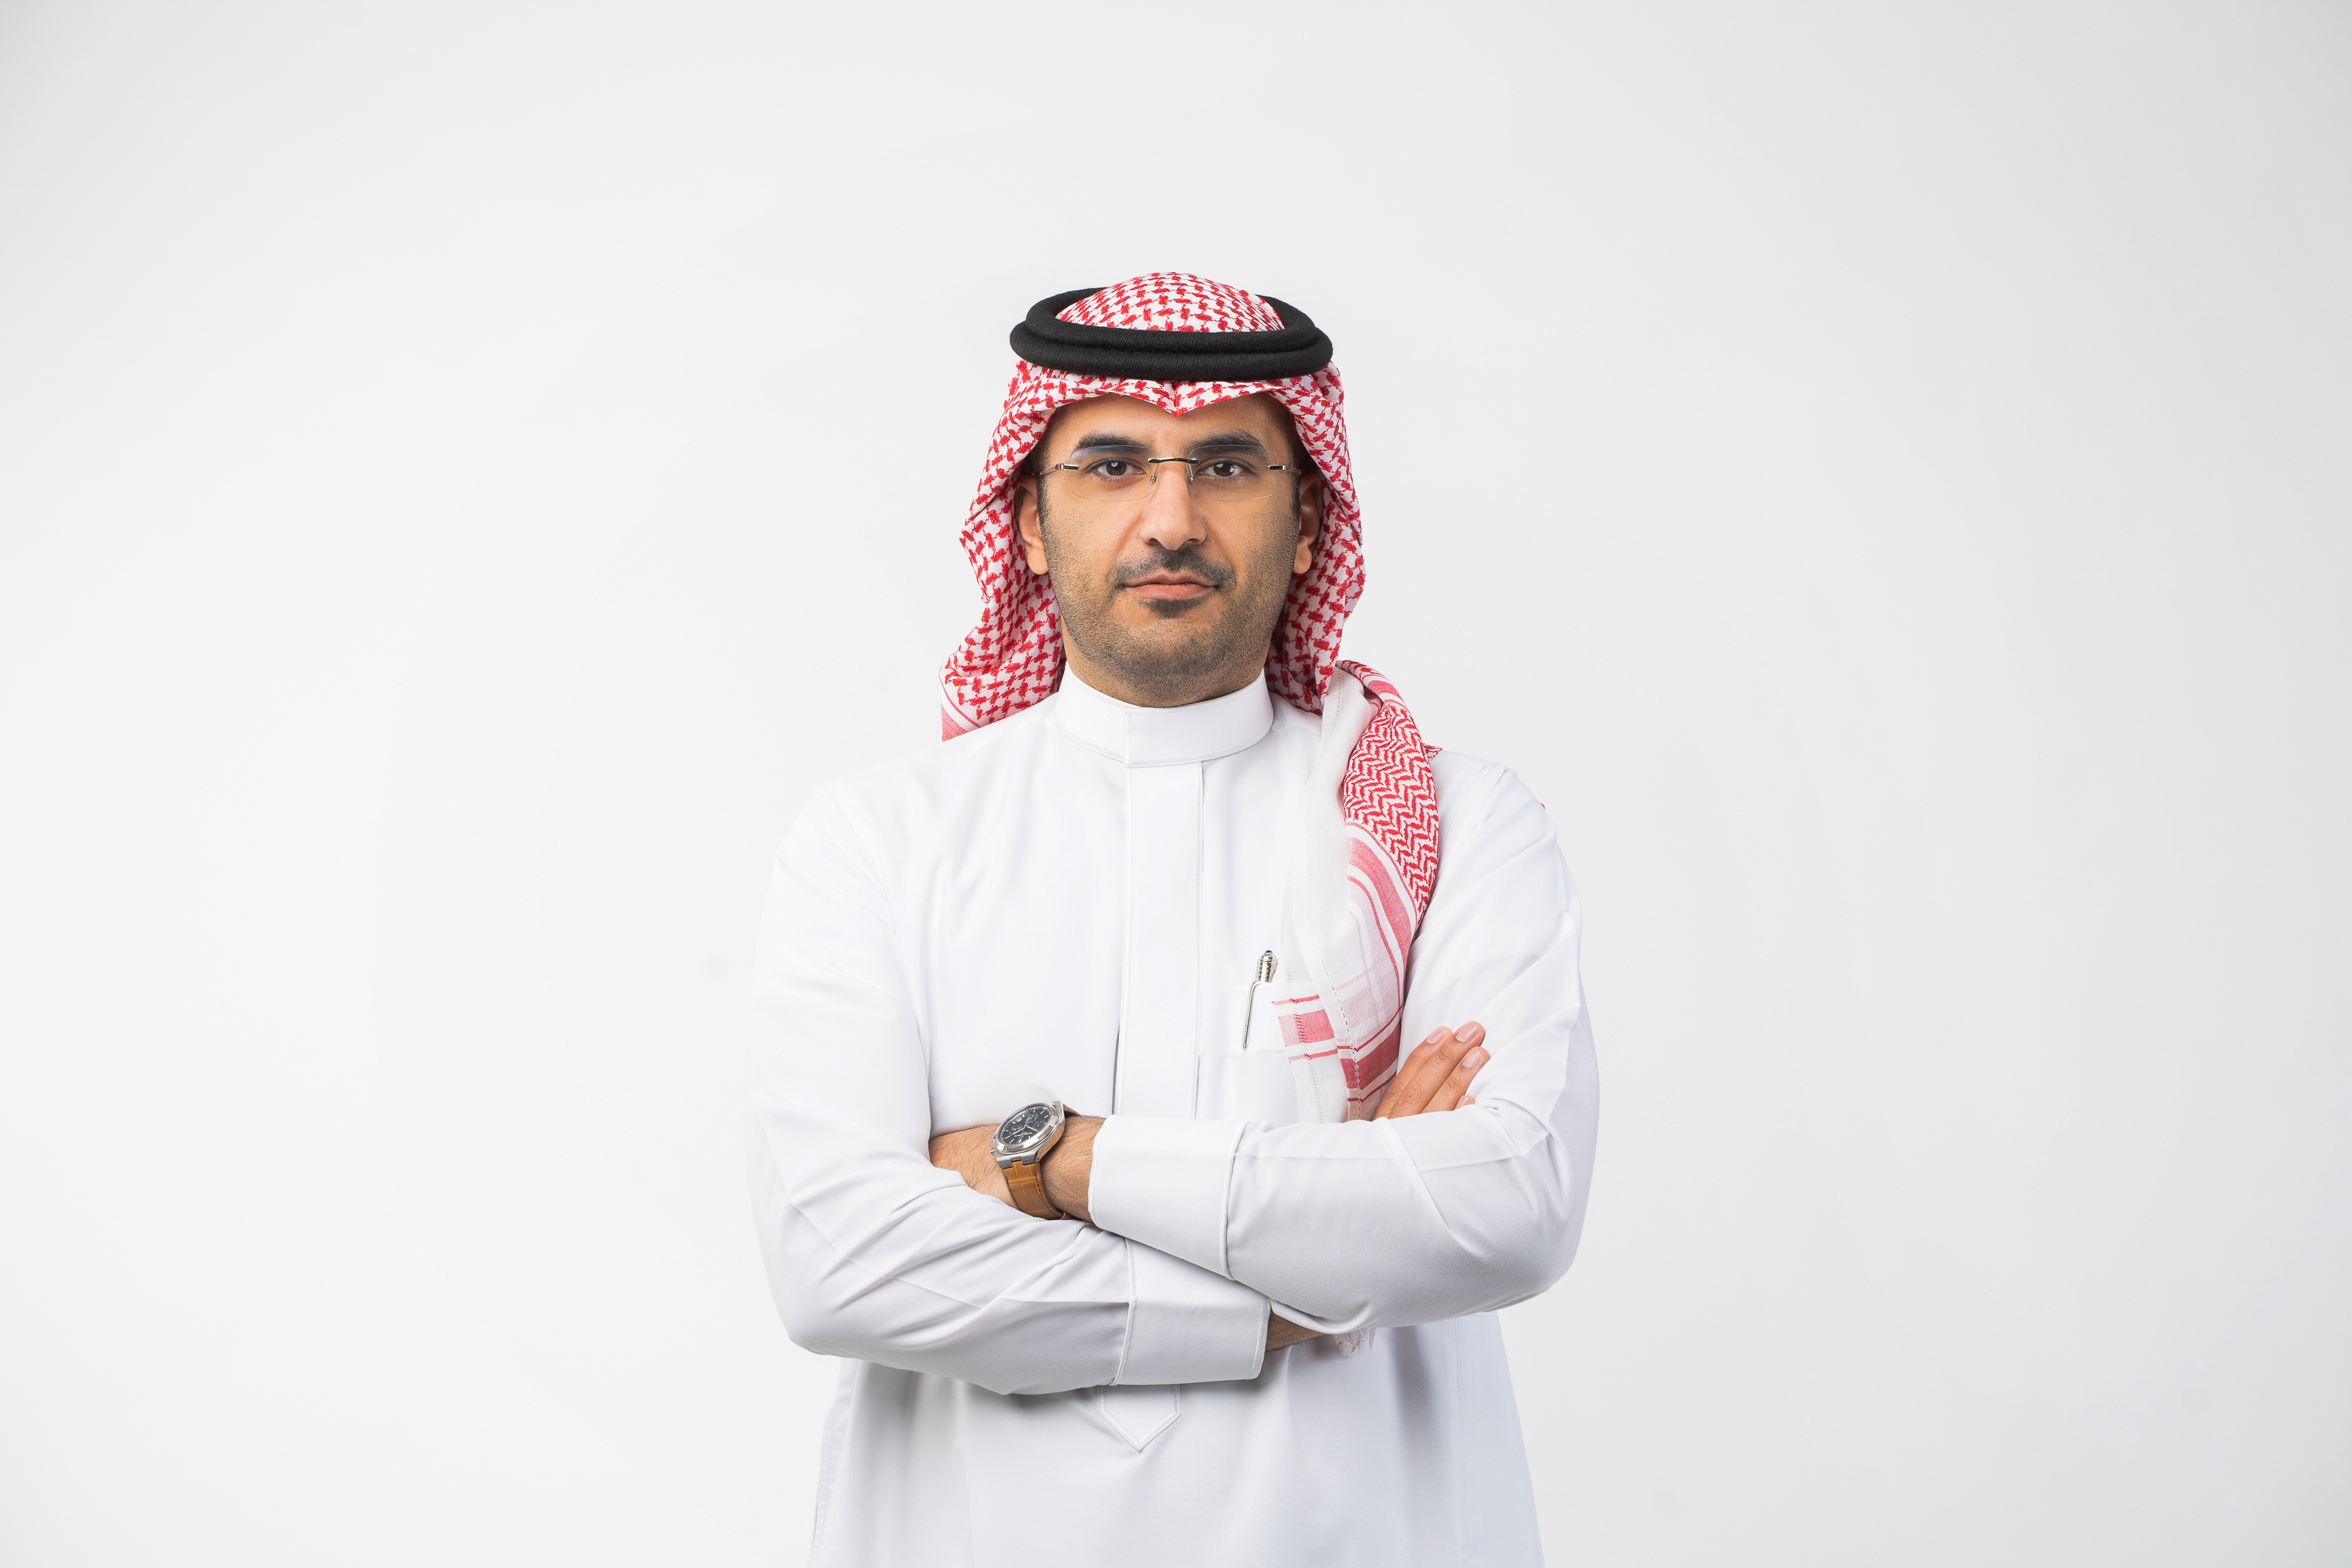 Mr. Muhammad Ibrahim Al-Jabr